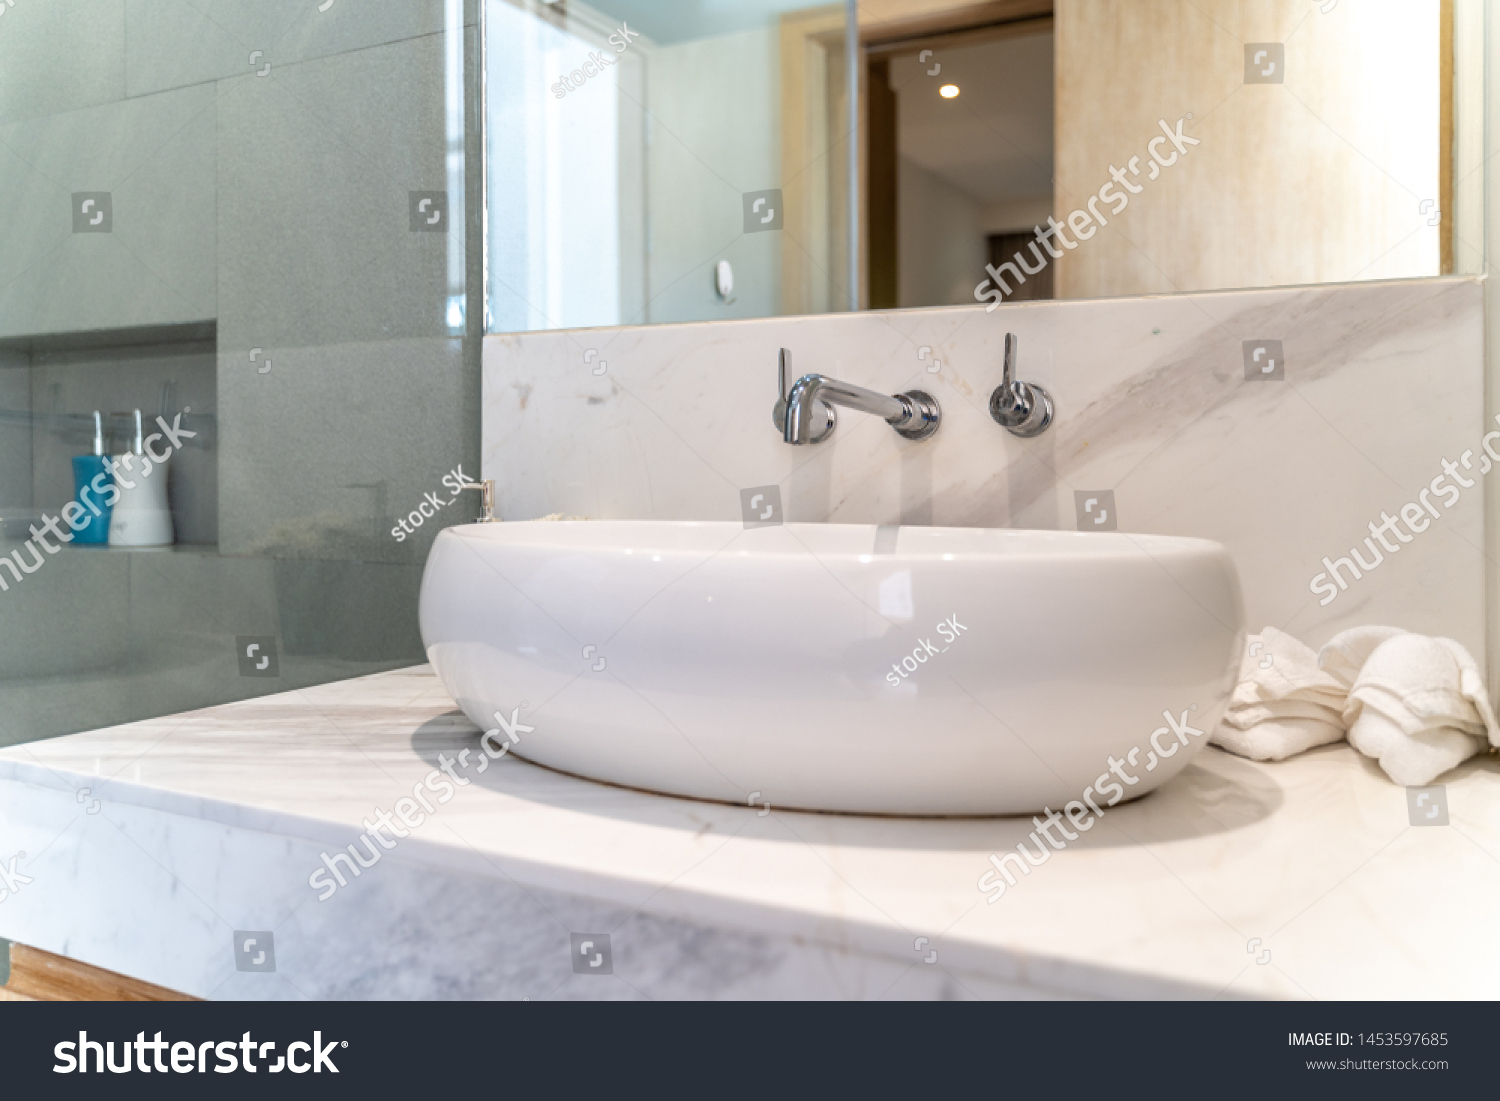 Luxury Bathroom Stone Resin Oval Vessel Sink Modern Art Sink Matte